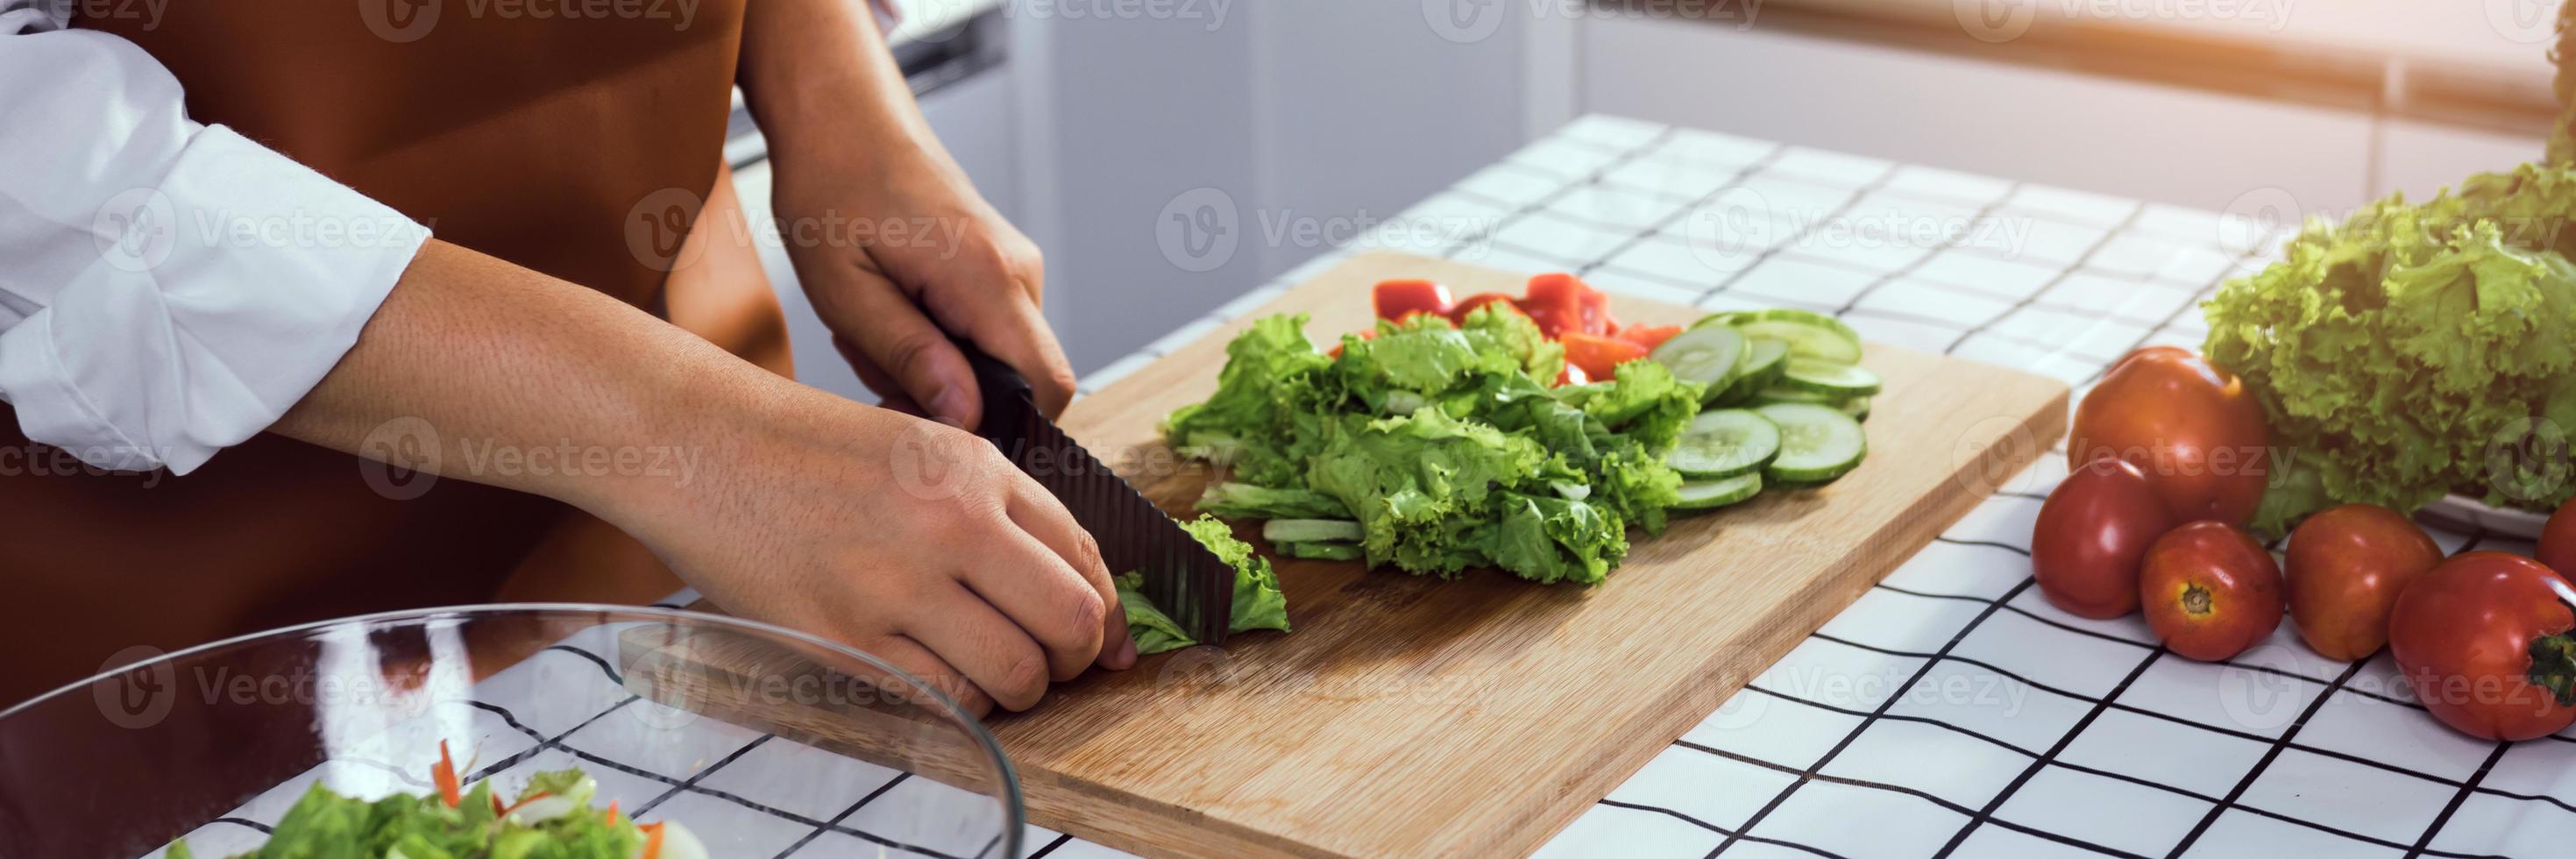 une femme asiatique utilise un couteau pour couper les salades vertes dans la cuisine. photo